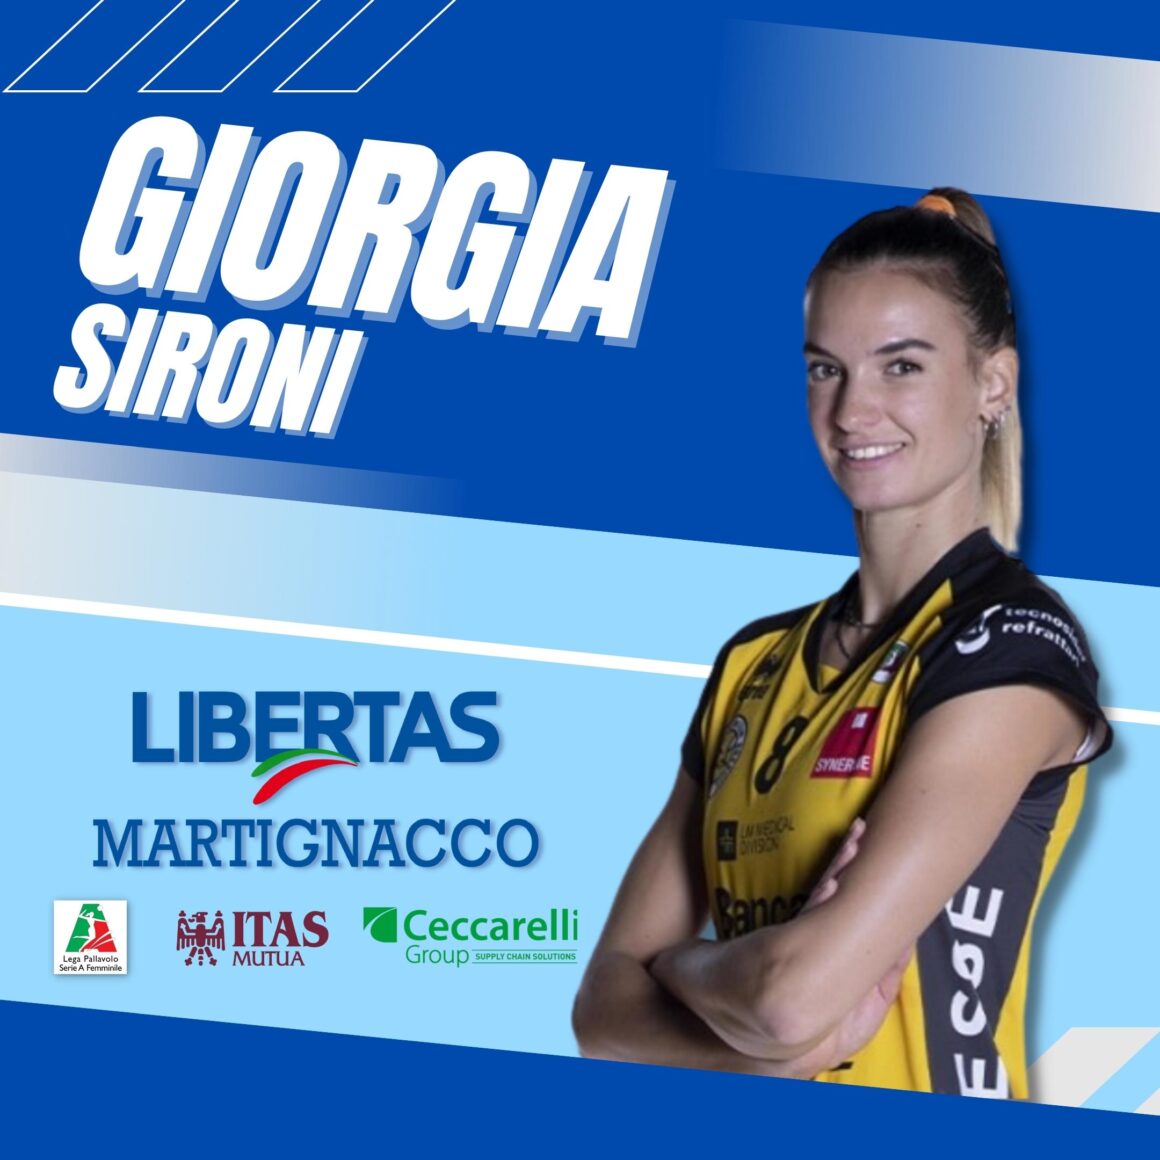 La Itas Ceccarelli Group annuncia Giorgia Sironi